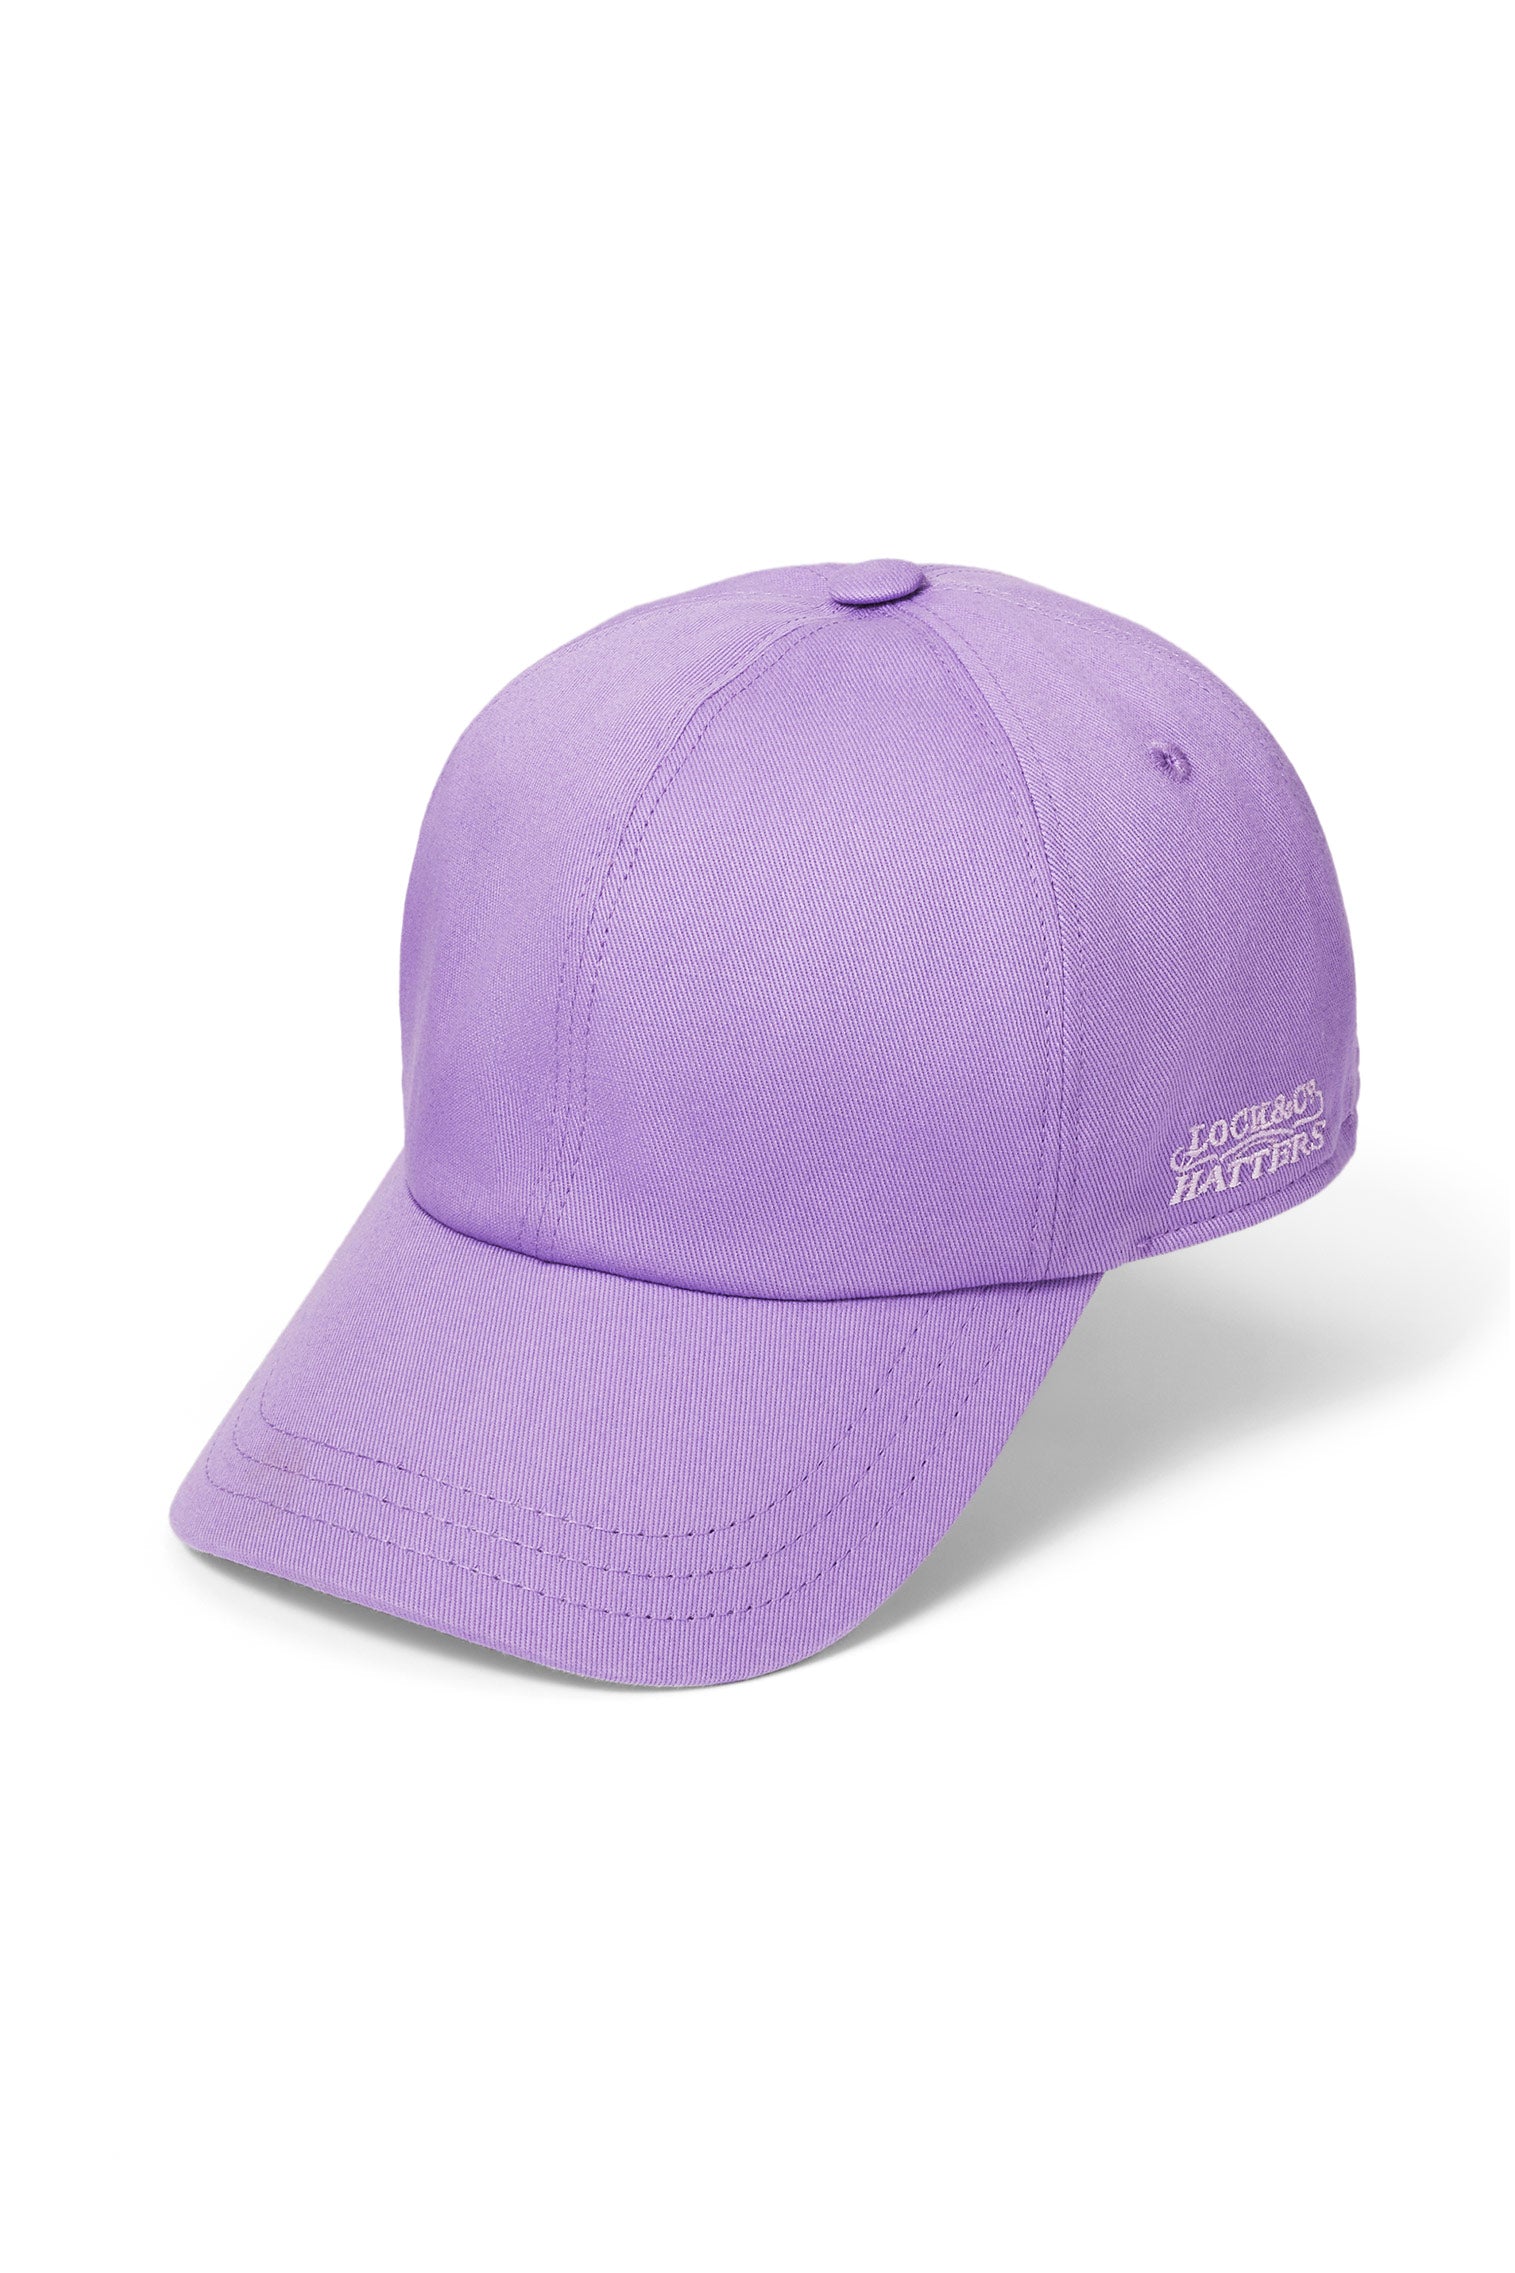 Adjustable Purple Baseball Cap - New Season Women's Hats - Lock & Co. Hatters London UK